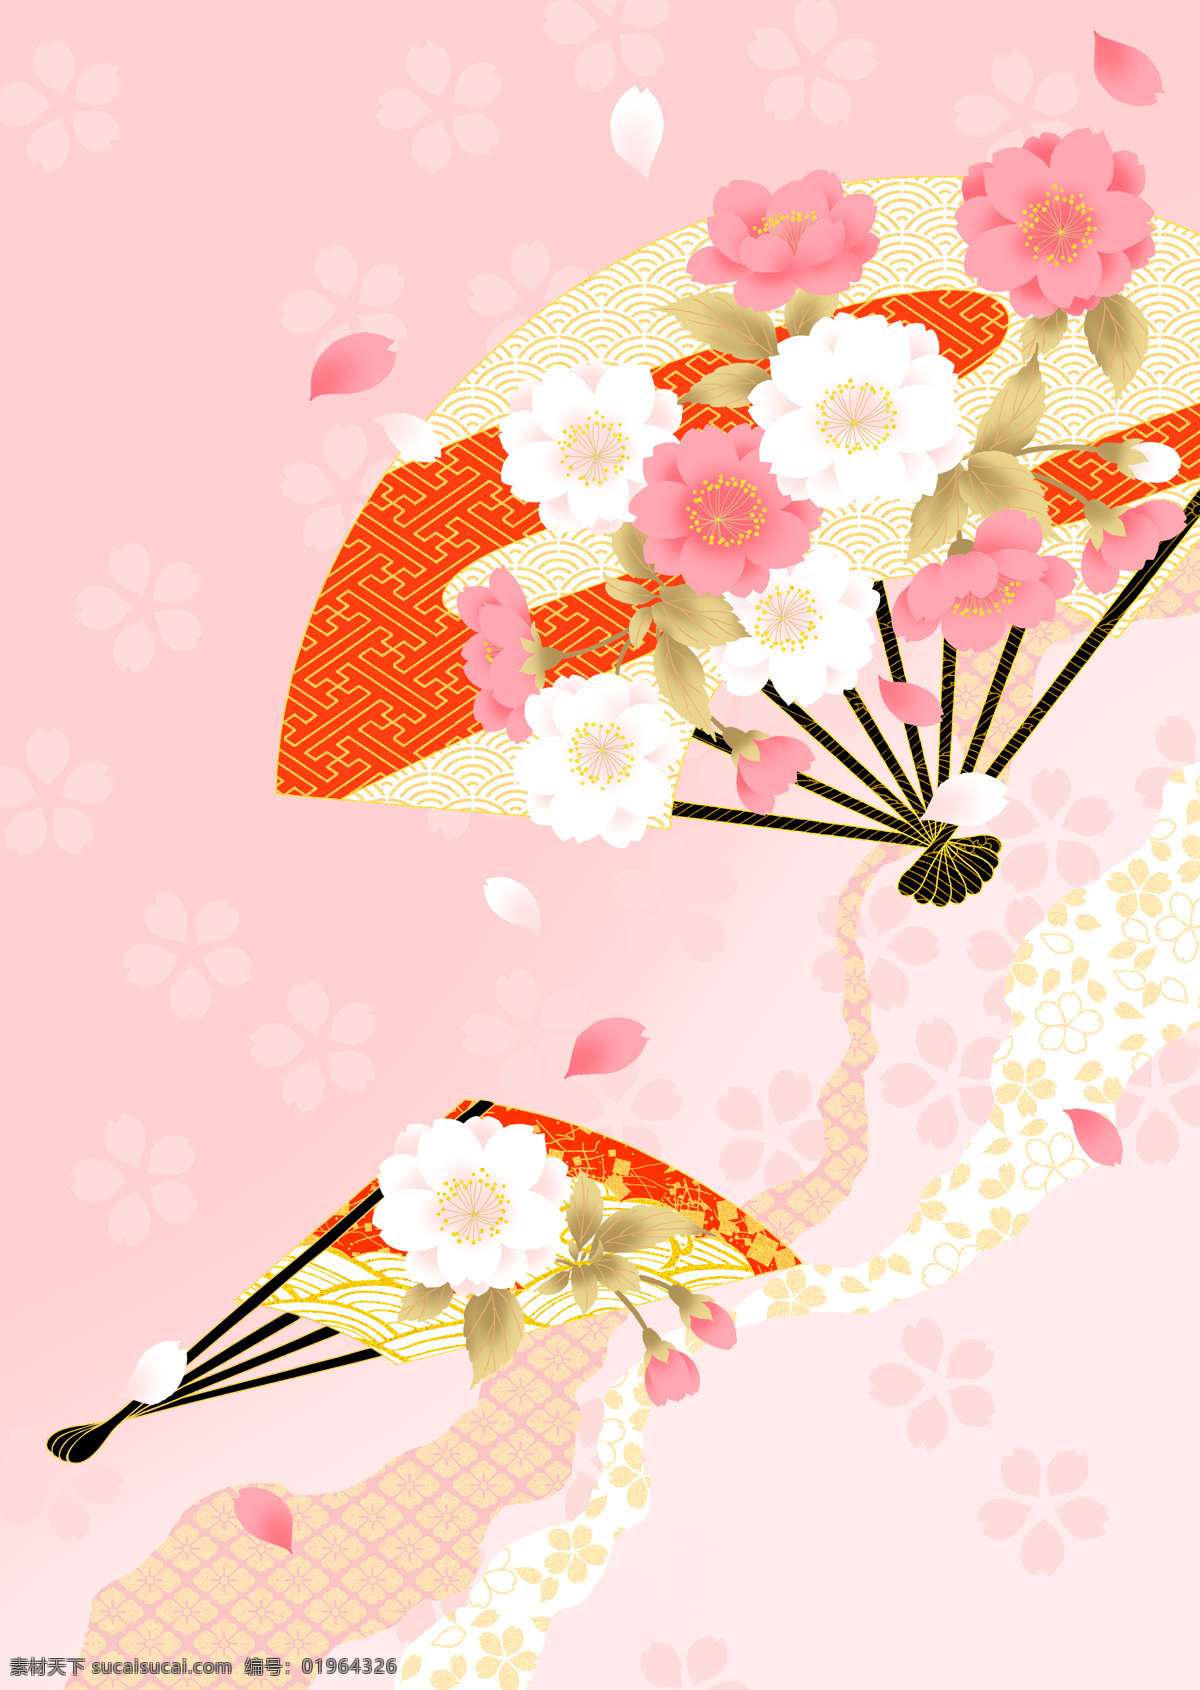 日本 风格 中 色彩 八重樱 扇子 底纹边框 背景底纹 设计图库